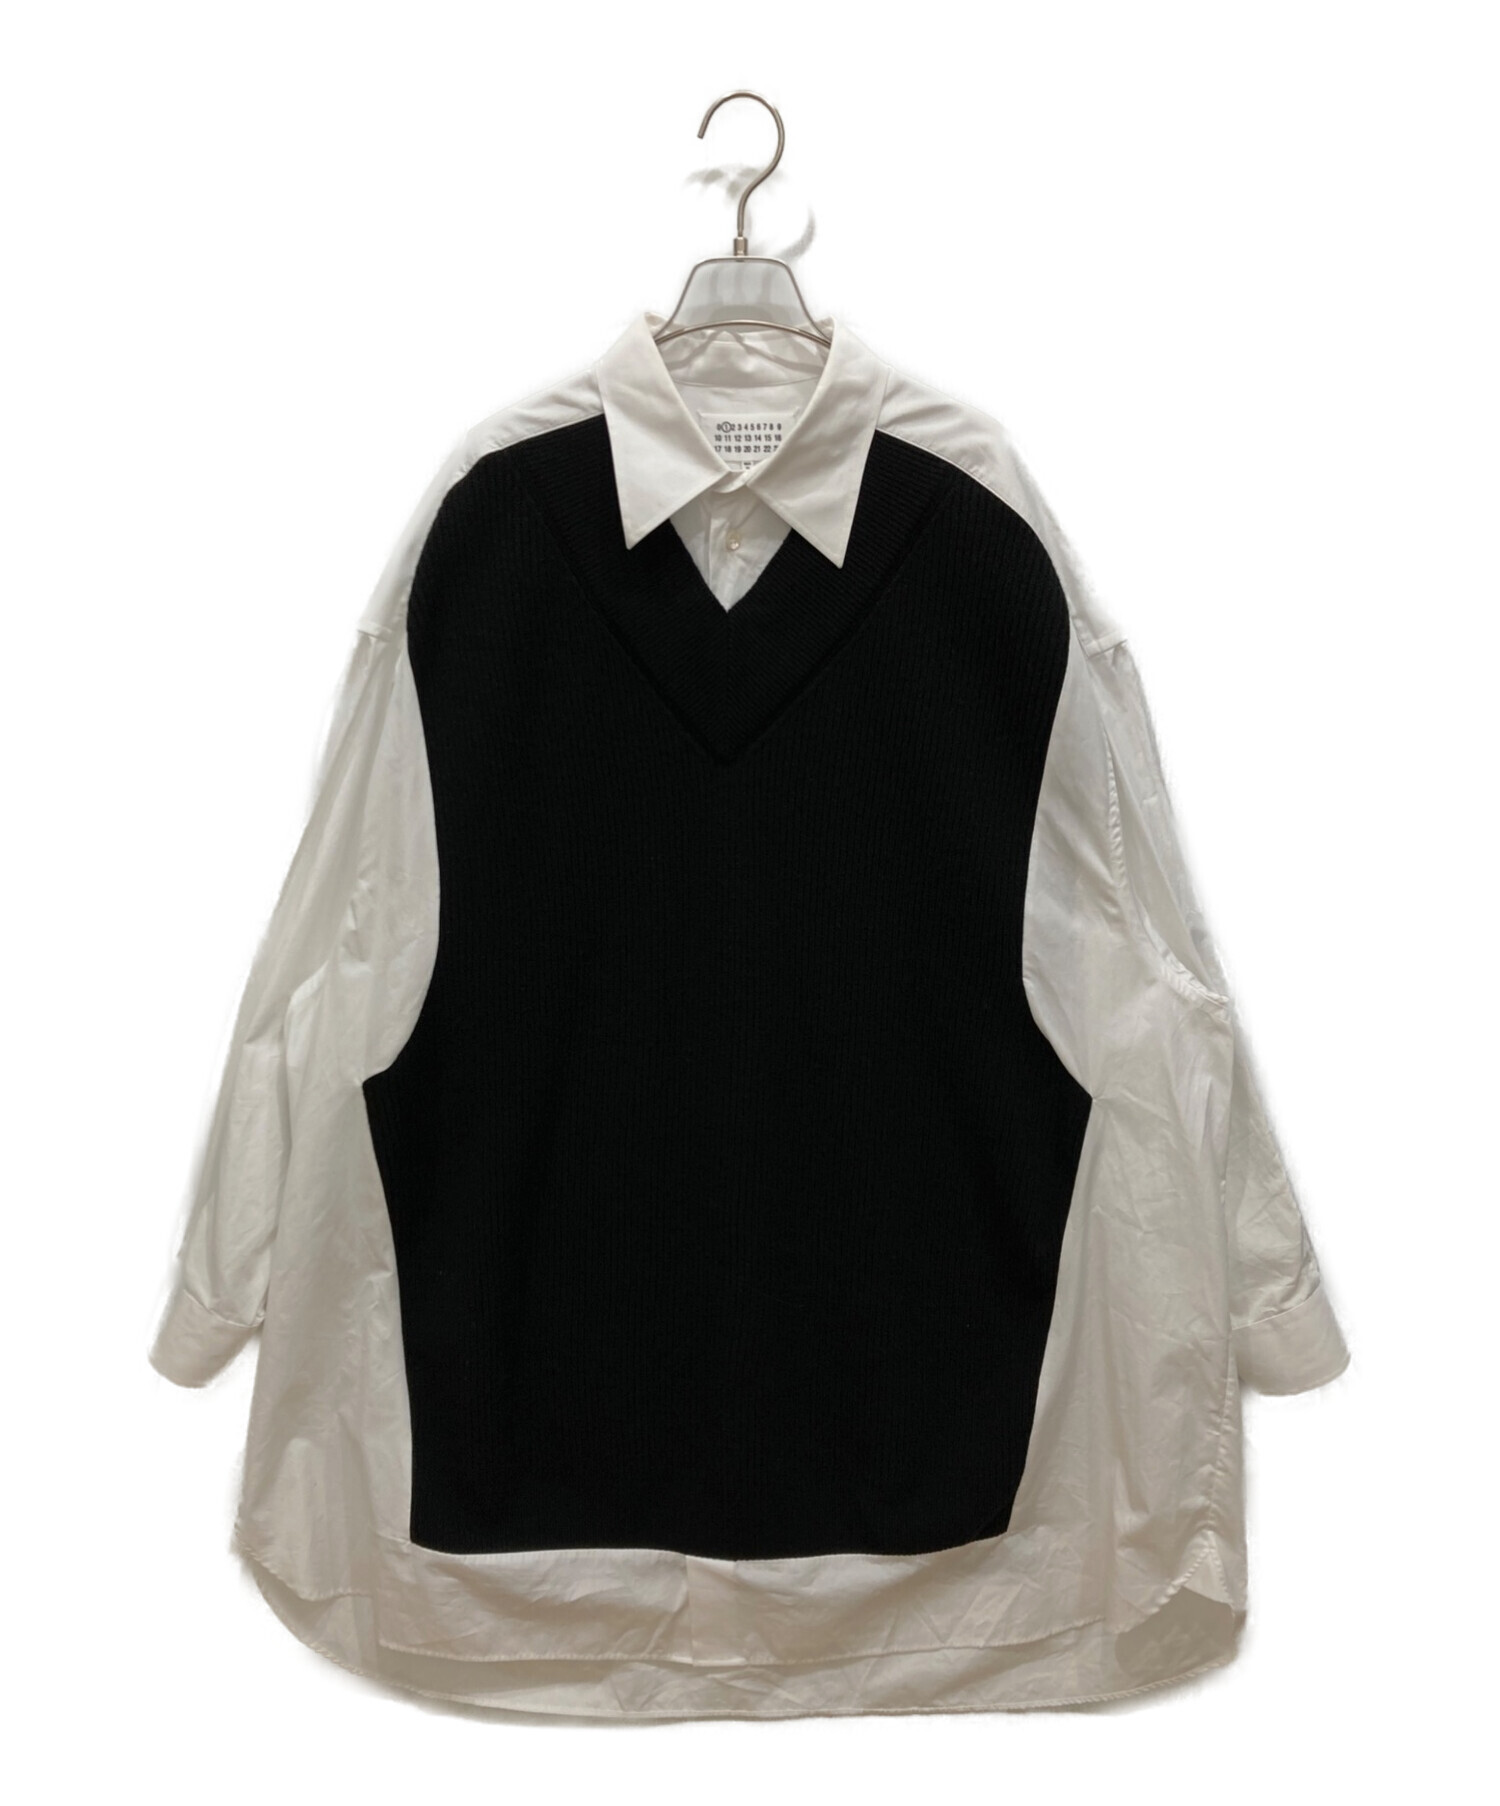 Maison Margiela (メゾンマルジェラ) Spliced ニット シャツ ドレス S51DL0356 S44720 ホワイト×ブラック  サイズ:XS